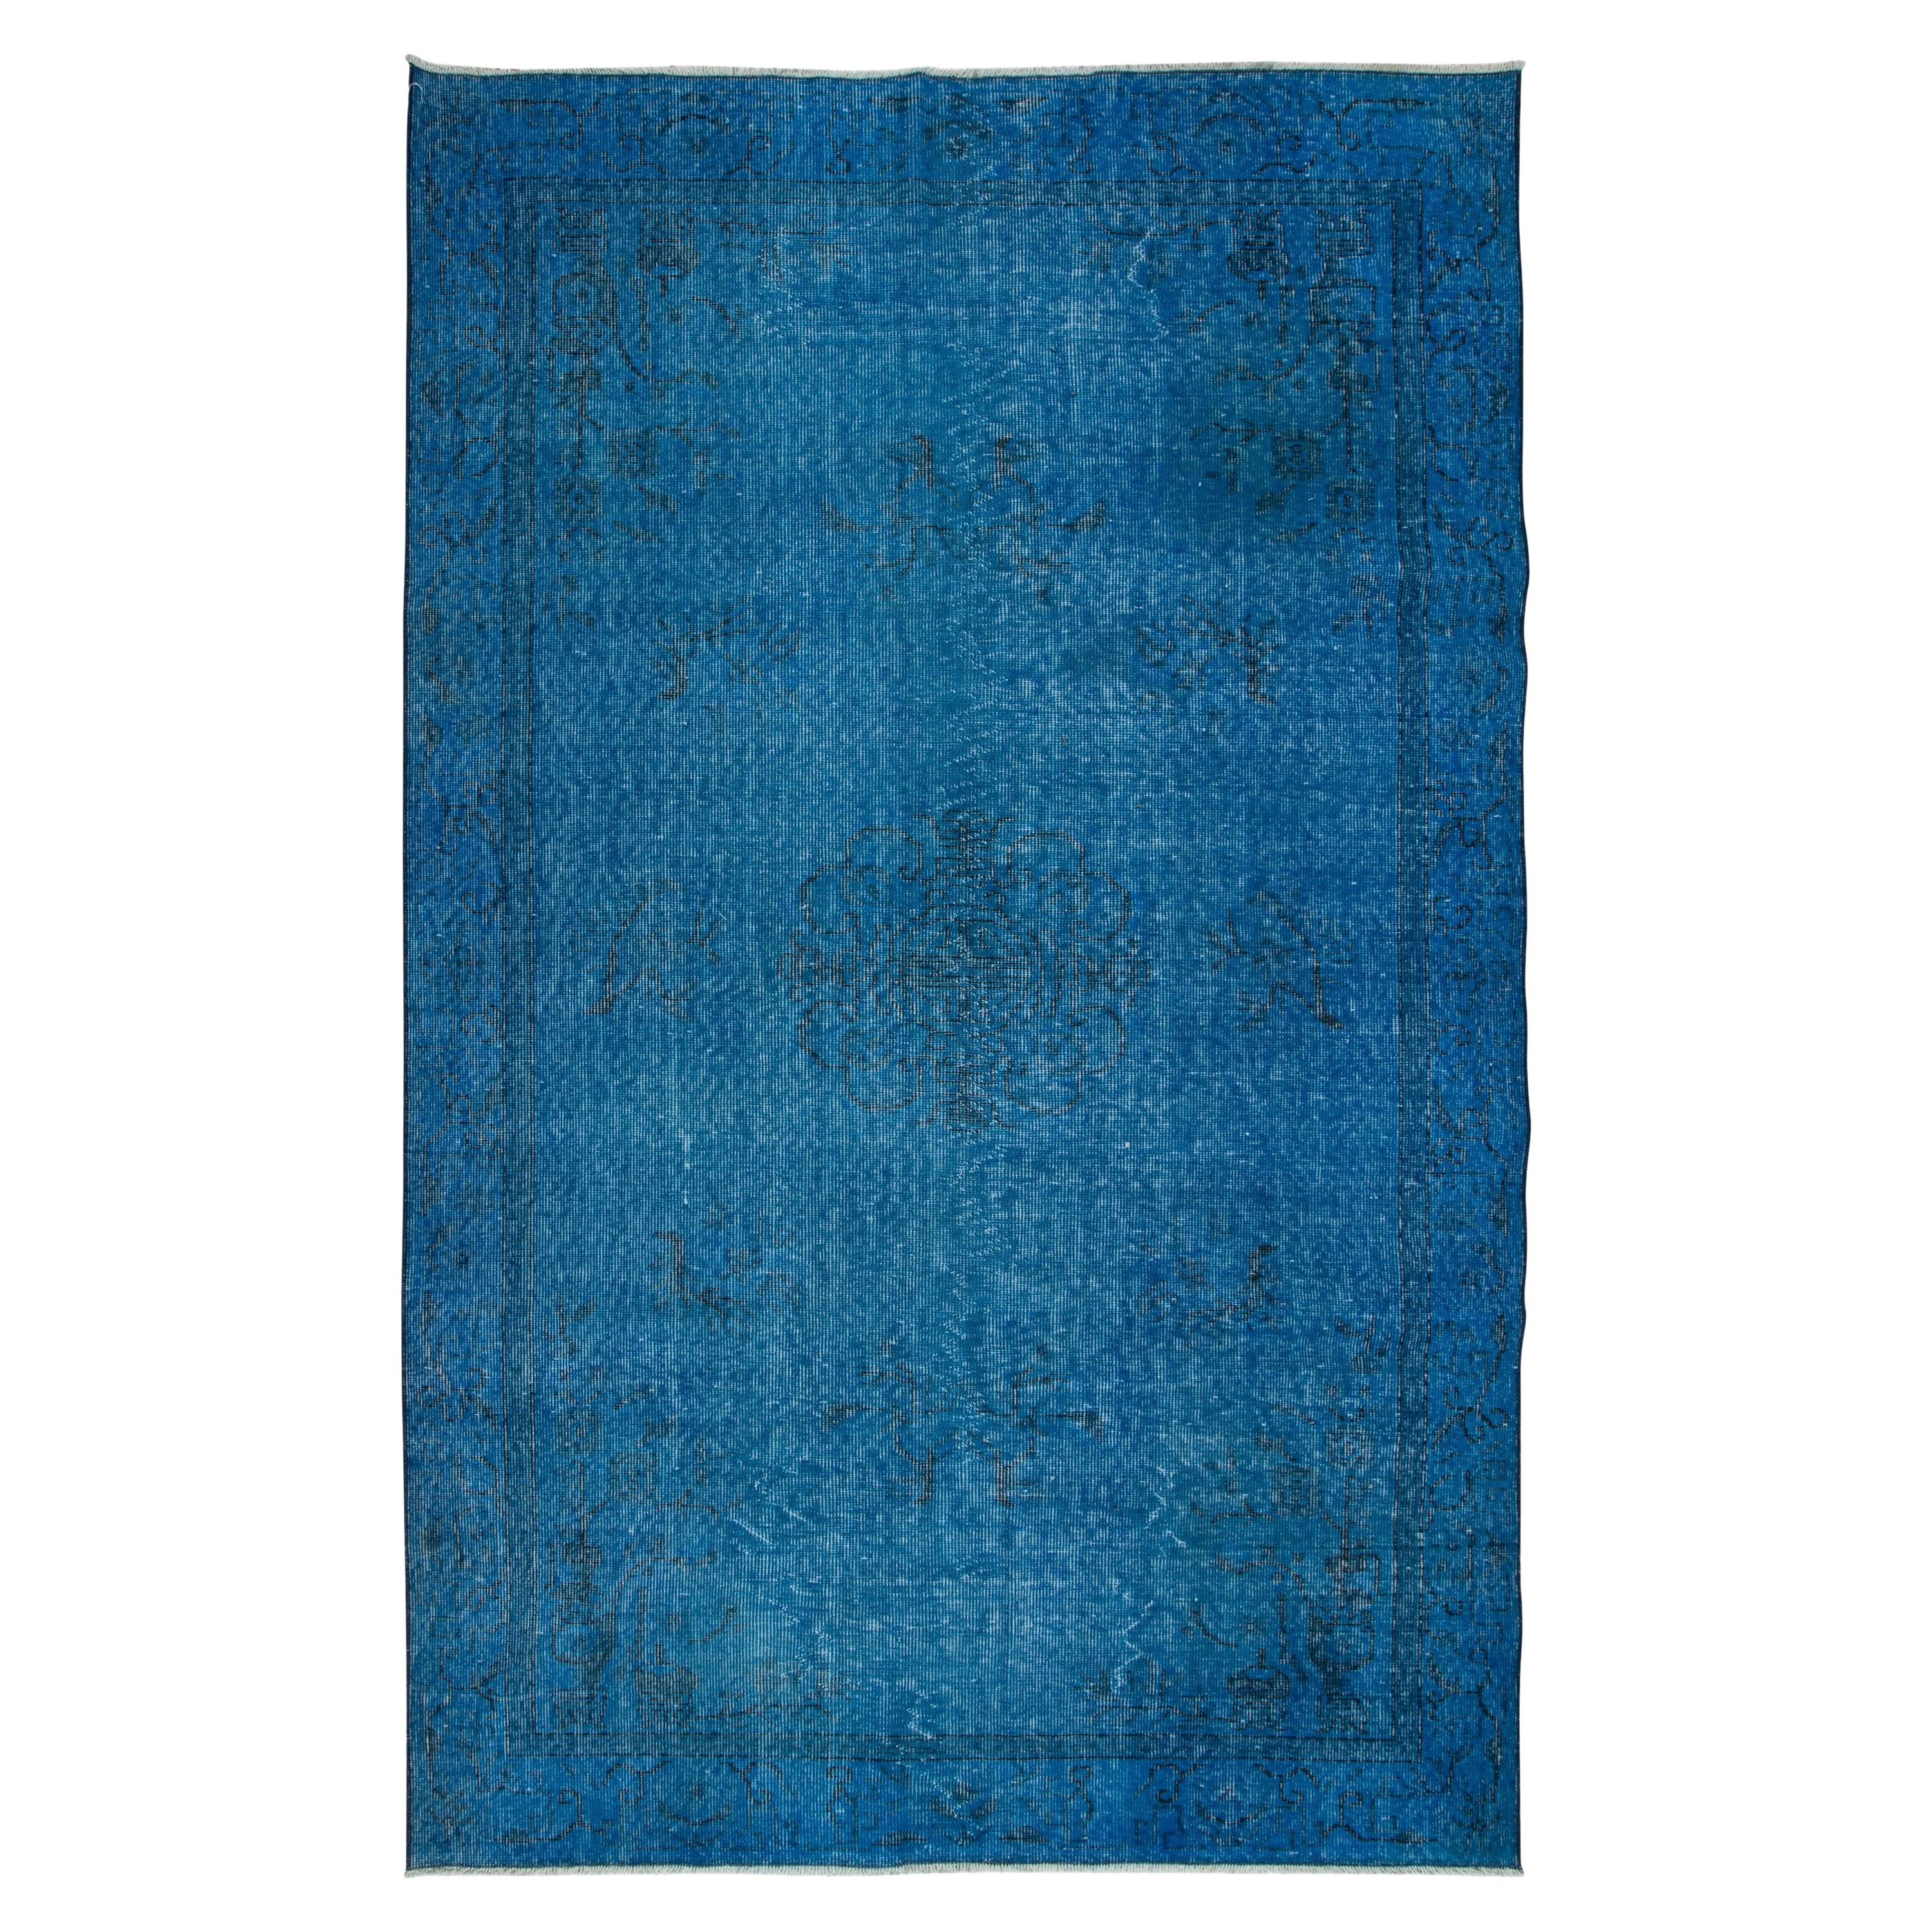 5.5x8.8 Ft Chinesisch Art Deco inspiriert handgefertigten blauen Teppich für moderne Interieurs im Angebot